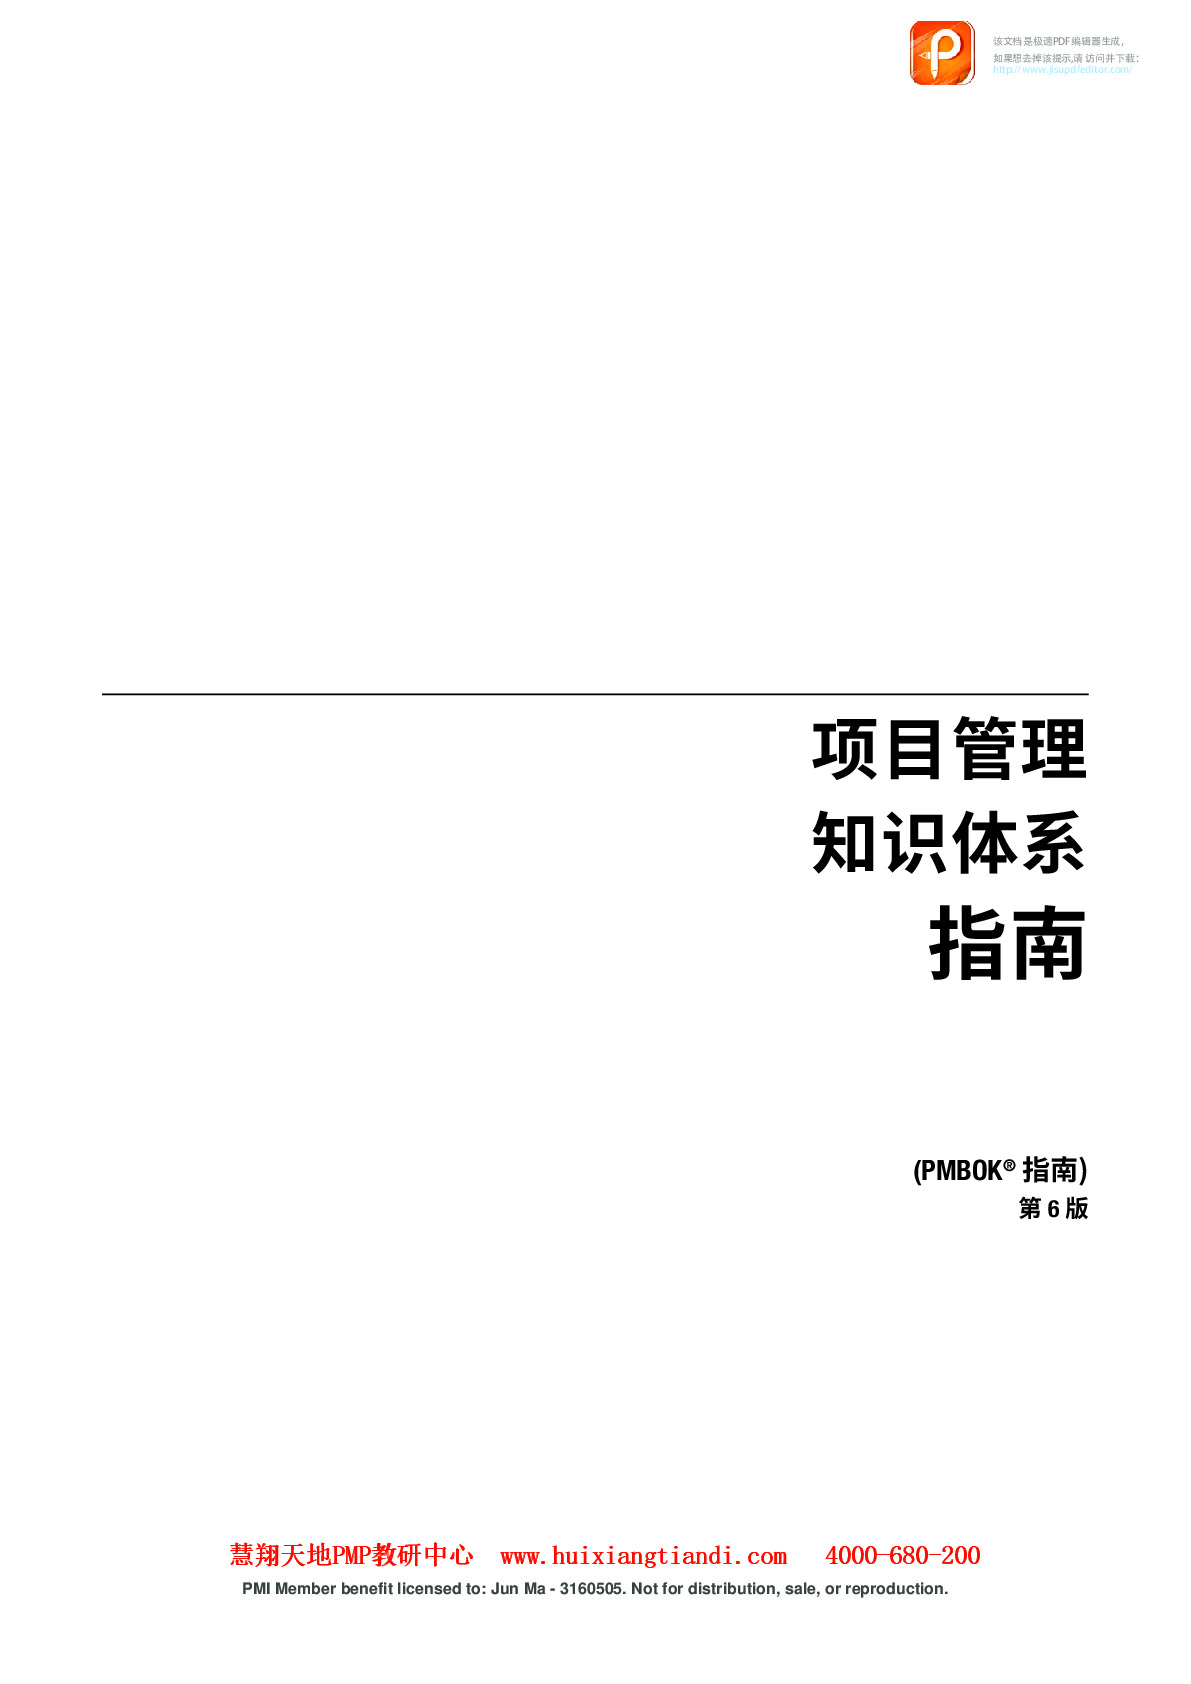 pmbok指南第6版-中文版